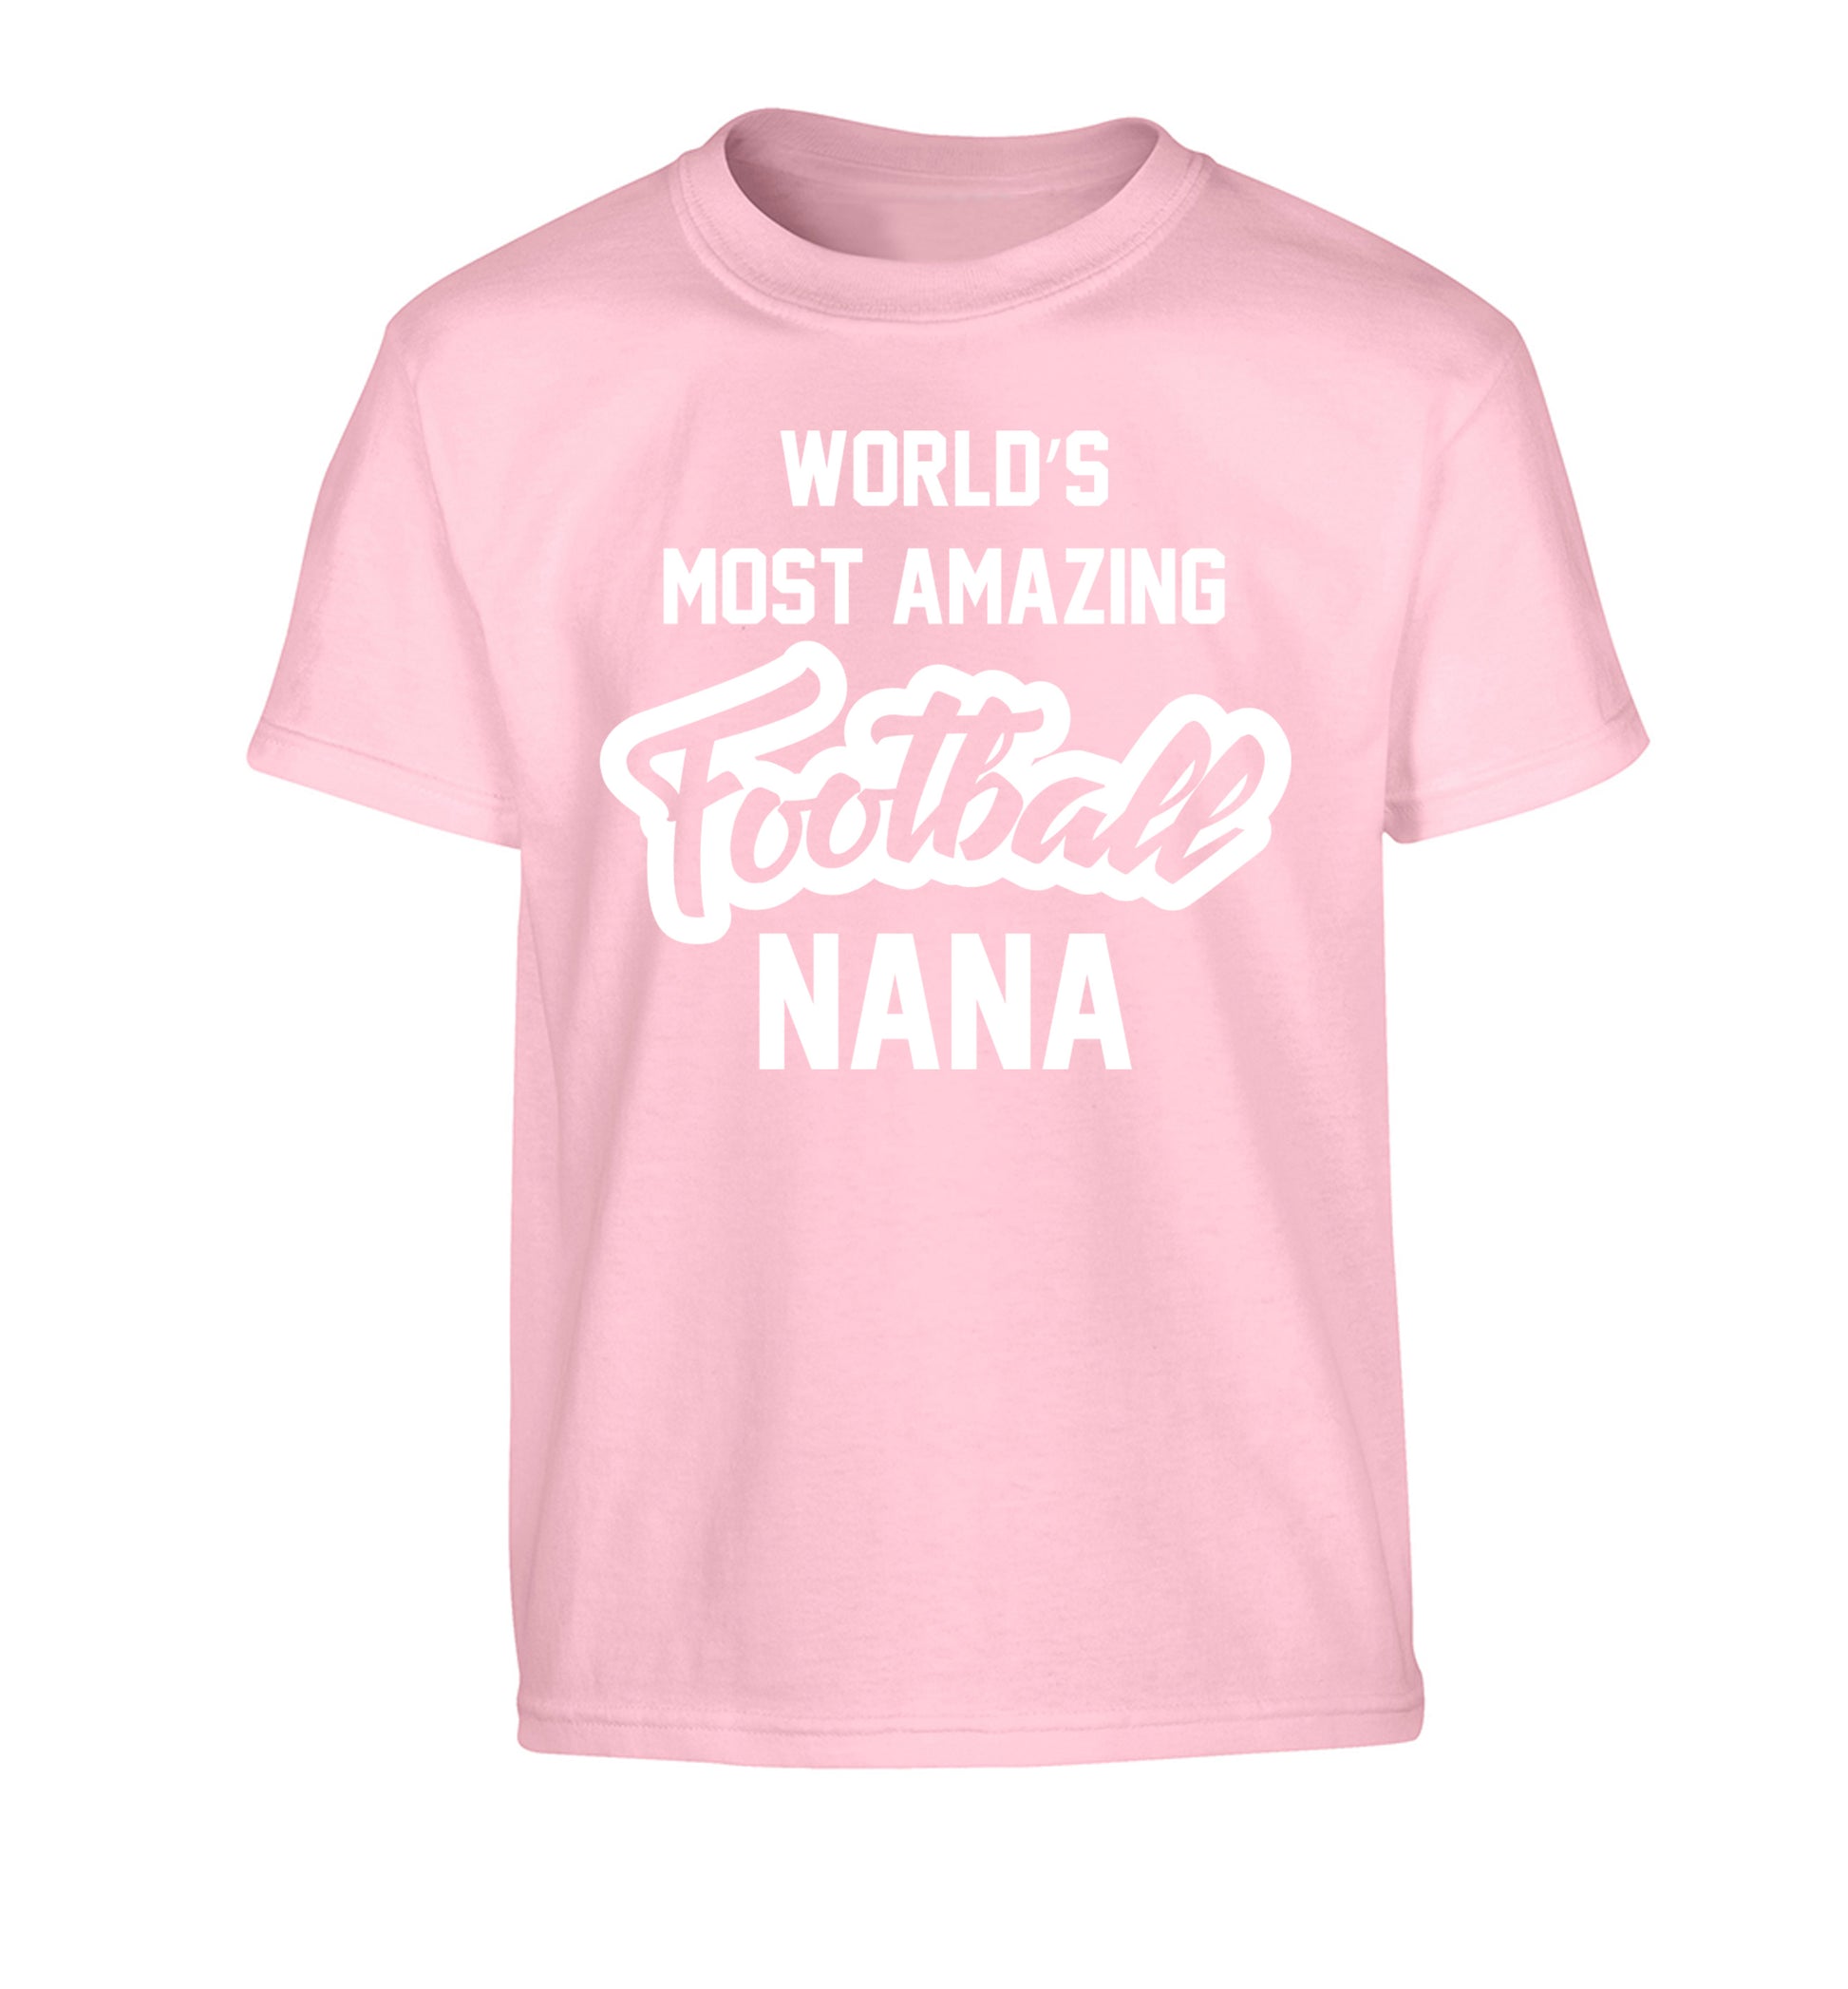 Worlds most amazing football nana Children's light pink Tshirt 12-14 Years